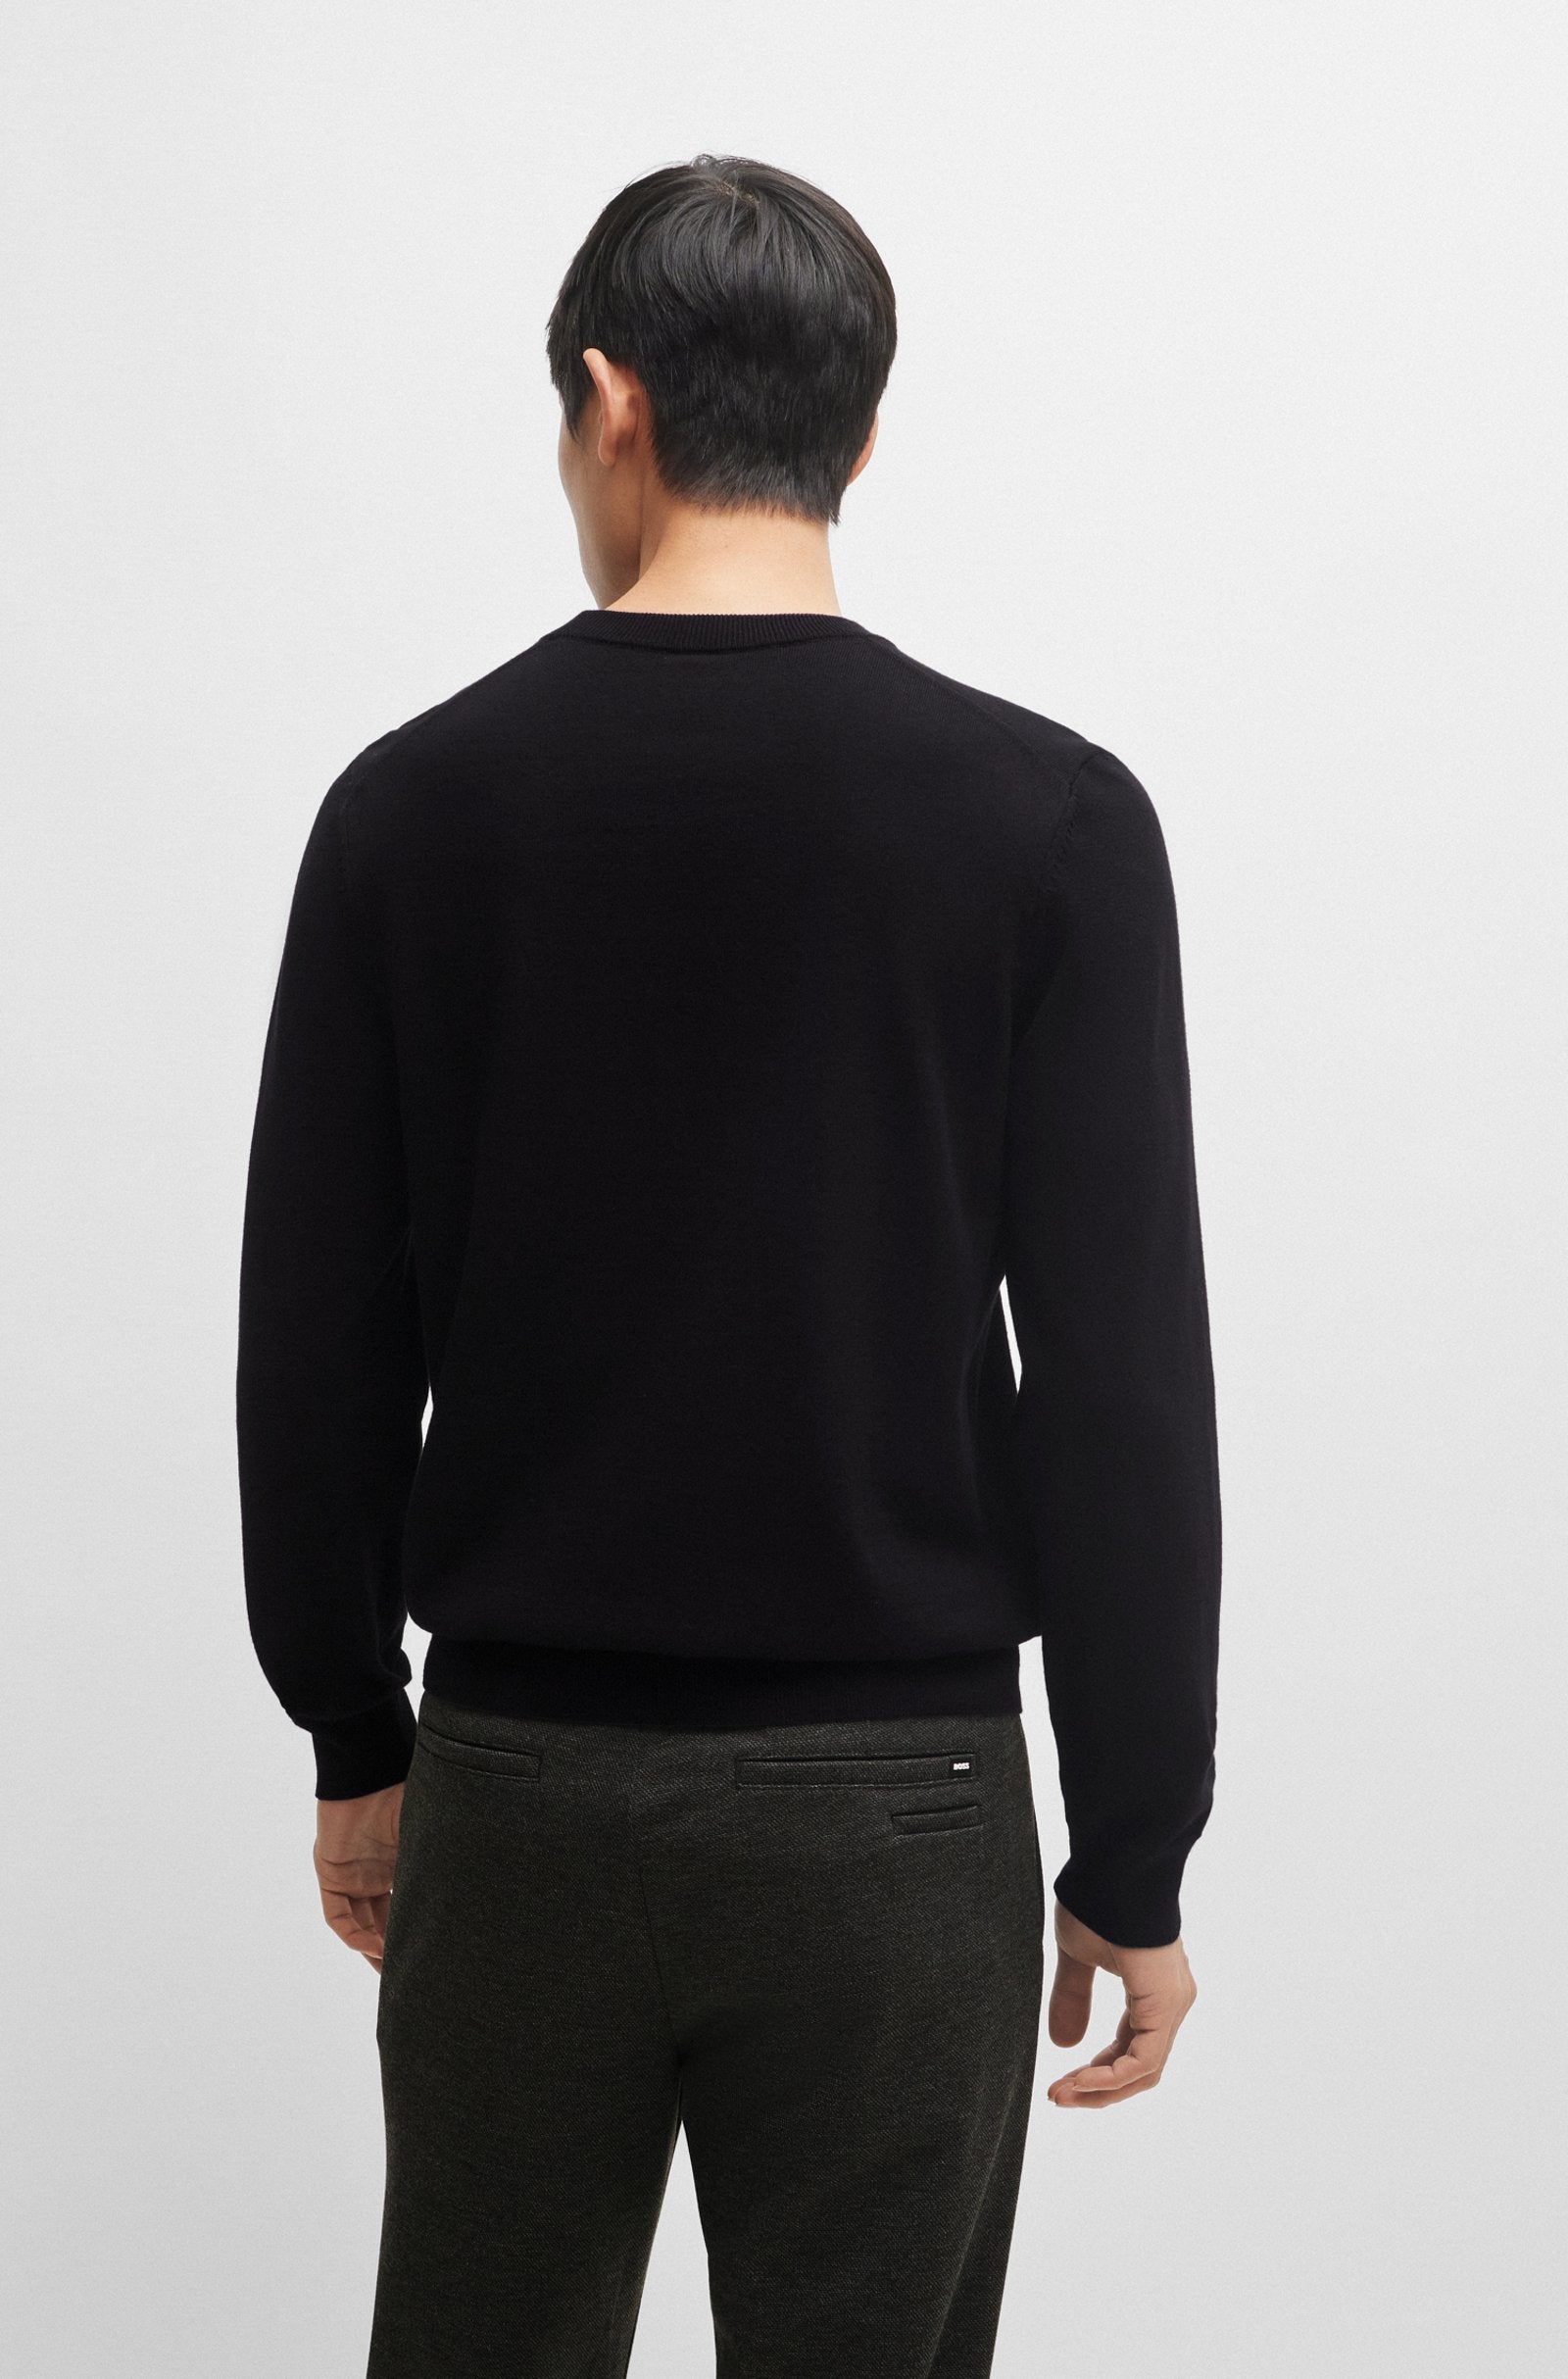 BOSS - PACELLO Black V-Neck Cotton Sweater 50506042 001